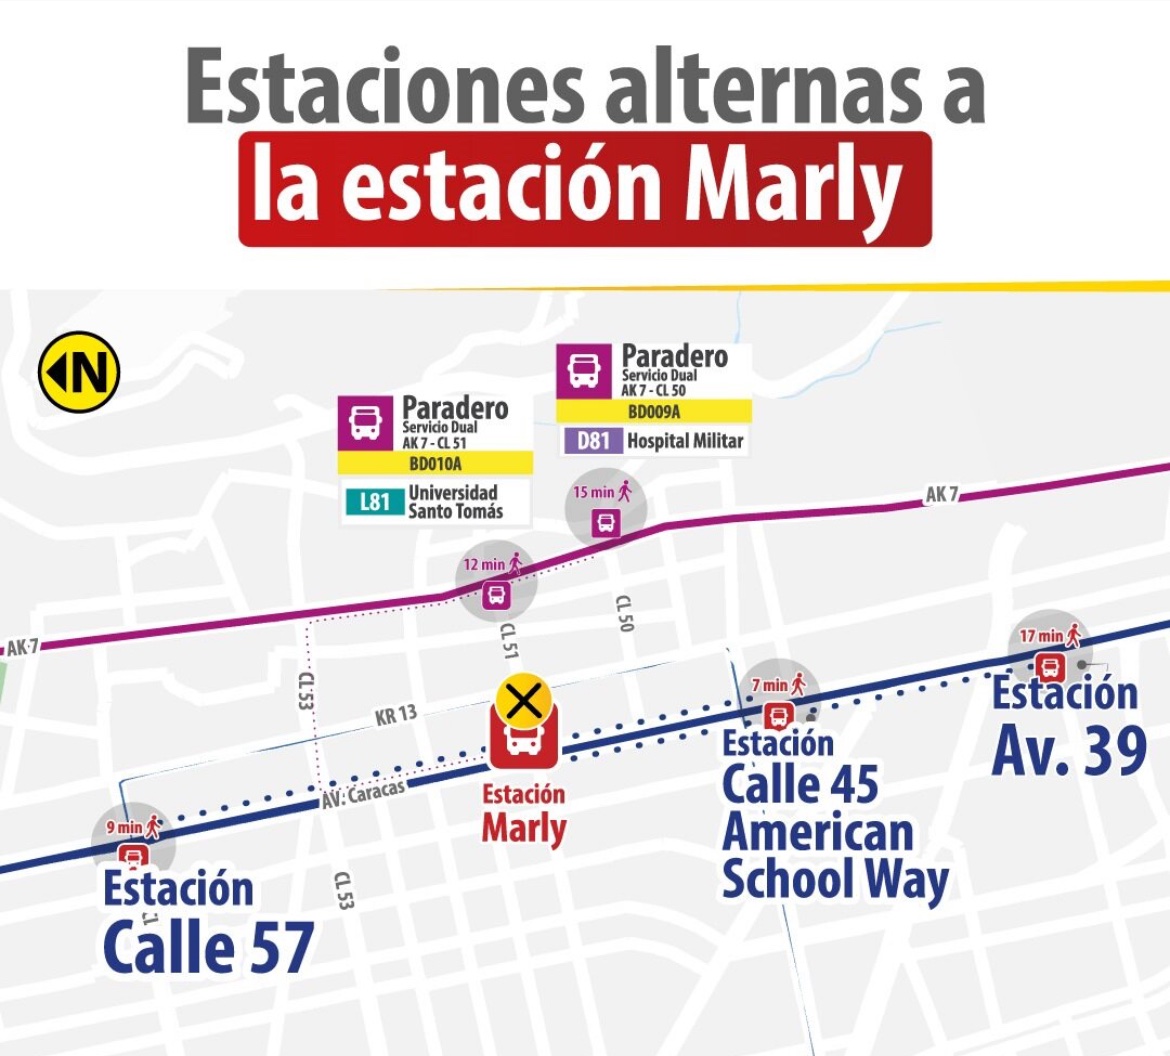 📢A partir del 25 de mayo, la estación Marly estará cerrada por obras del @MetroBogota. Para acercarte o salir de este sector cuentas con estas opciones: 📍Estación Calle 57 📍Estación Calle 45 American School Way 📍Estación Av.39 📍Paradero L81 📍Paradero D81